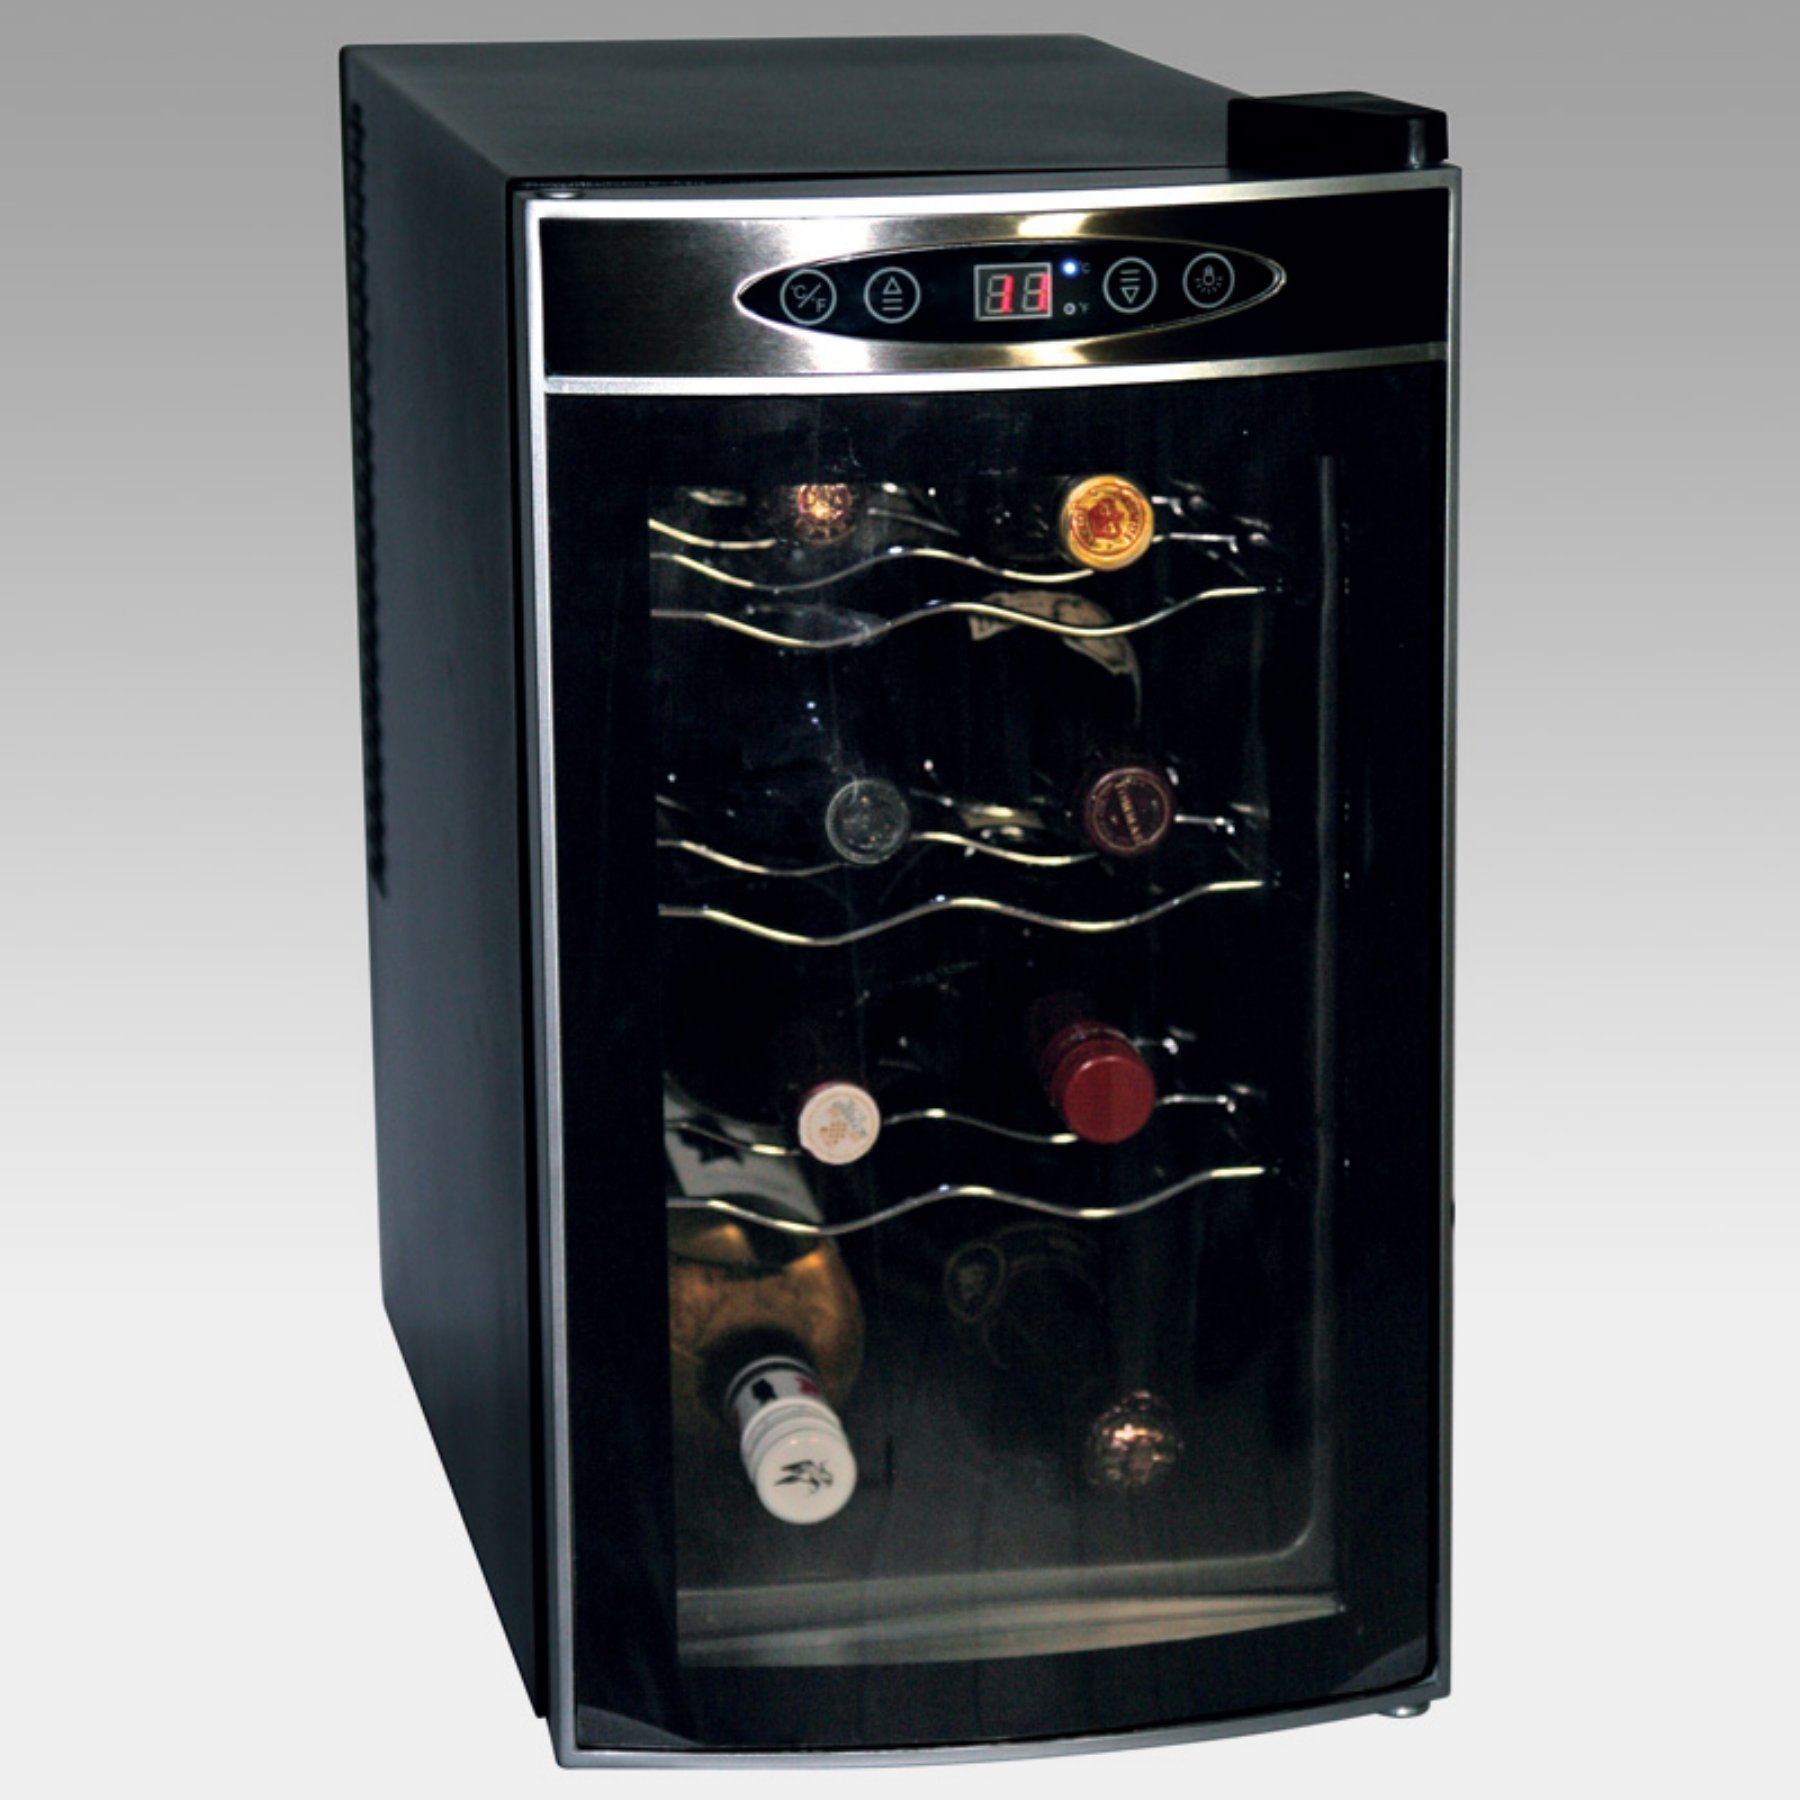 42++ Koolatron wc08 8 bottle wine cooler 102 stainless steel ideas in 2021 